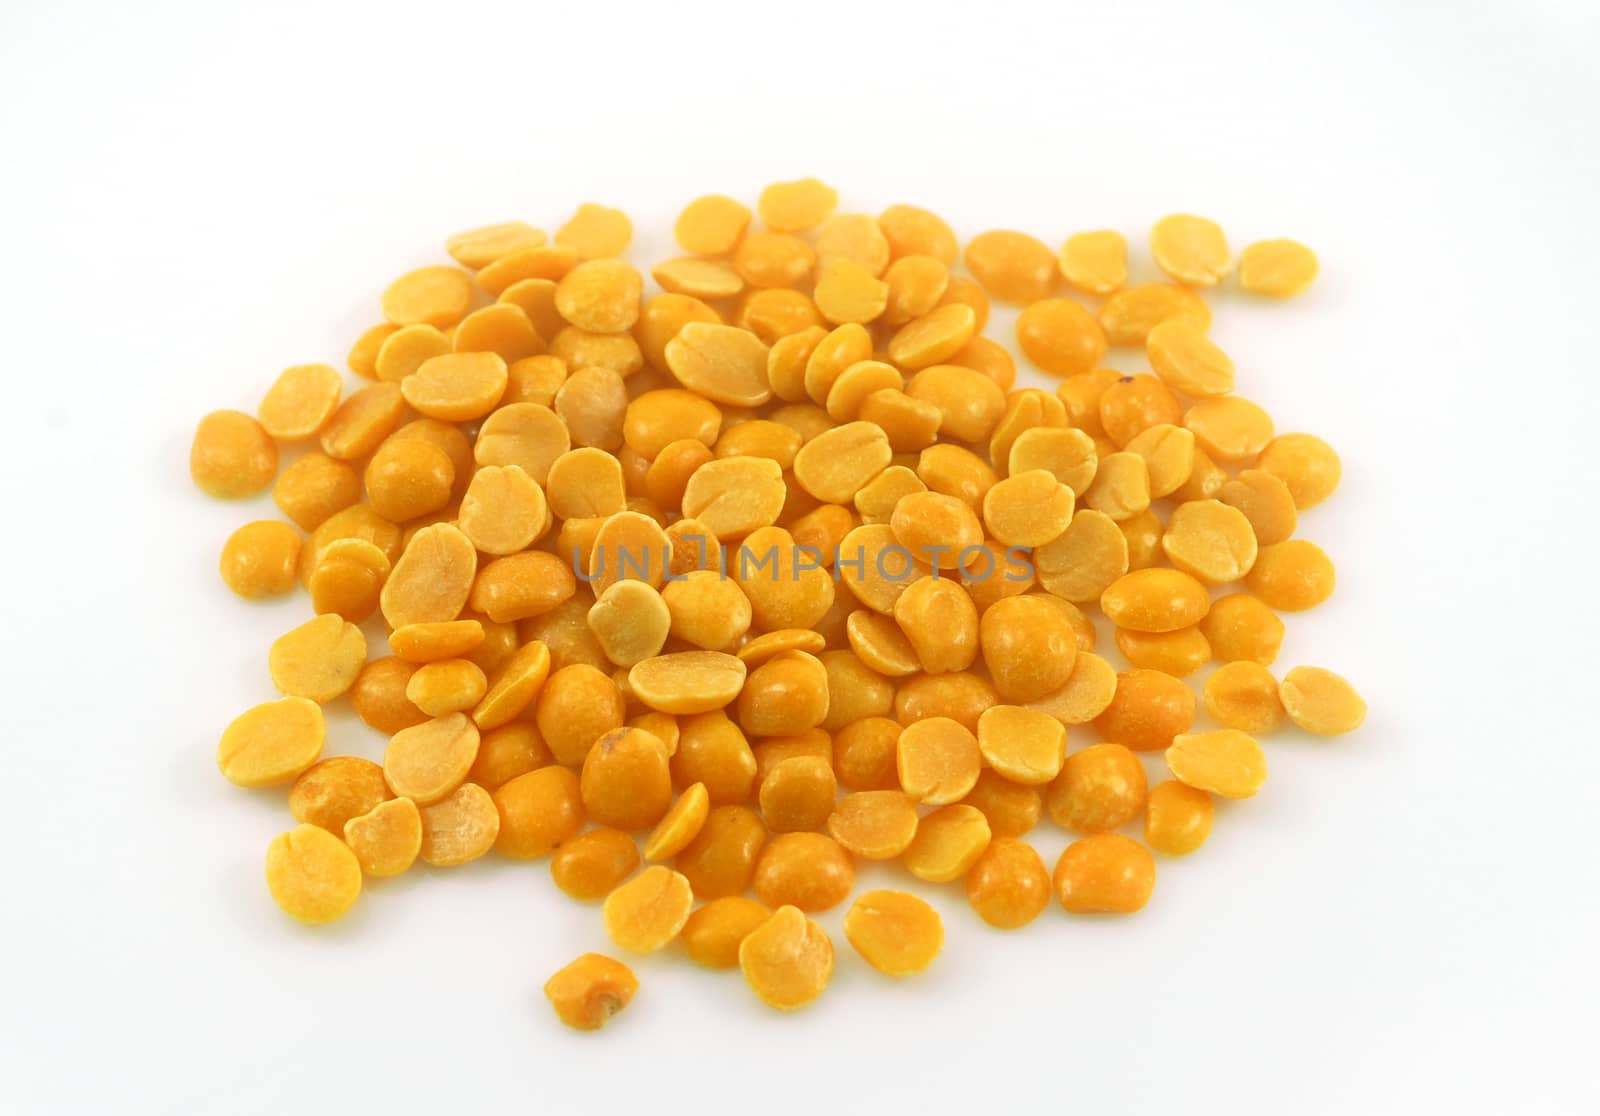 Yellow Arhar Toor Lentil Dal Grain by nikonite